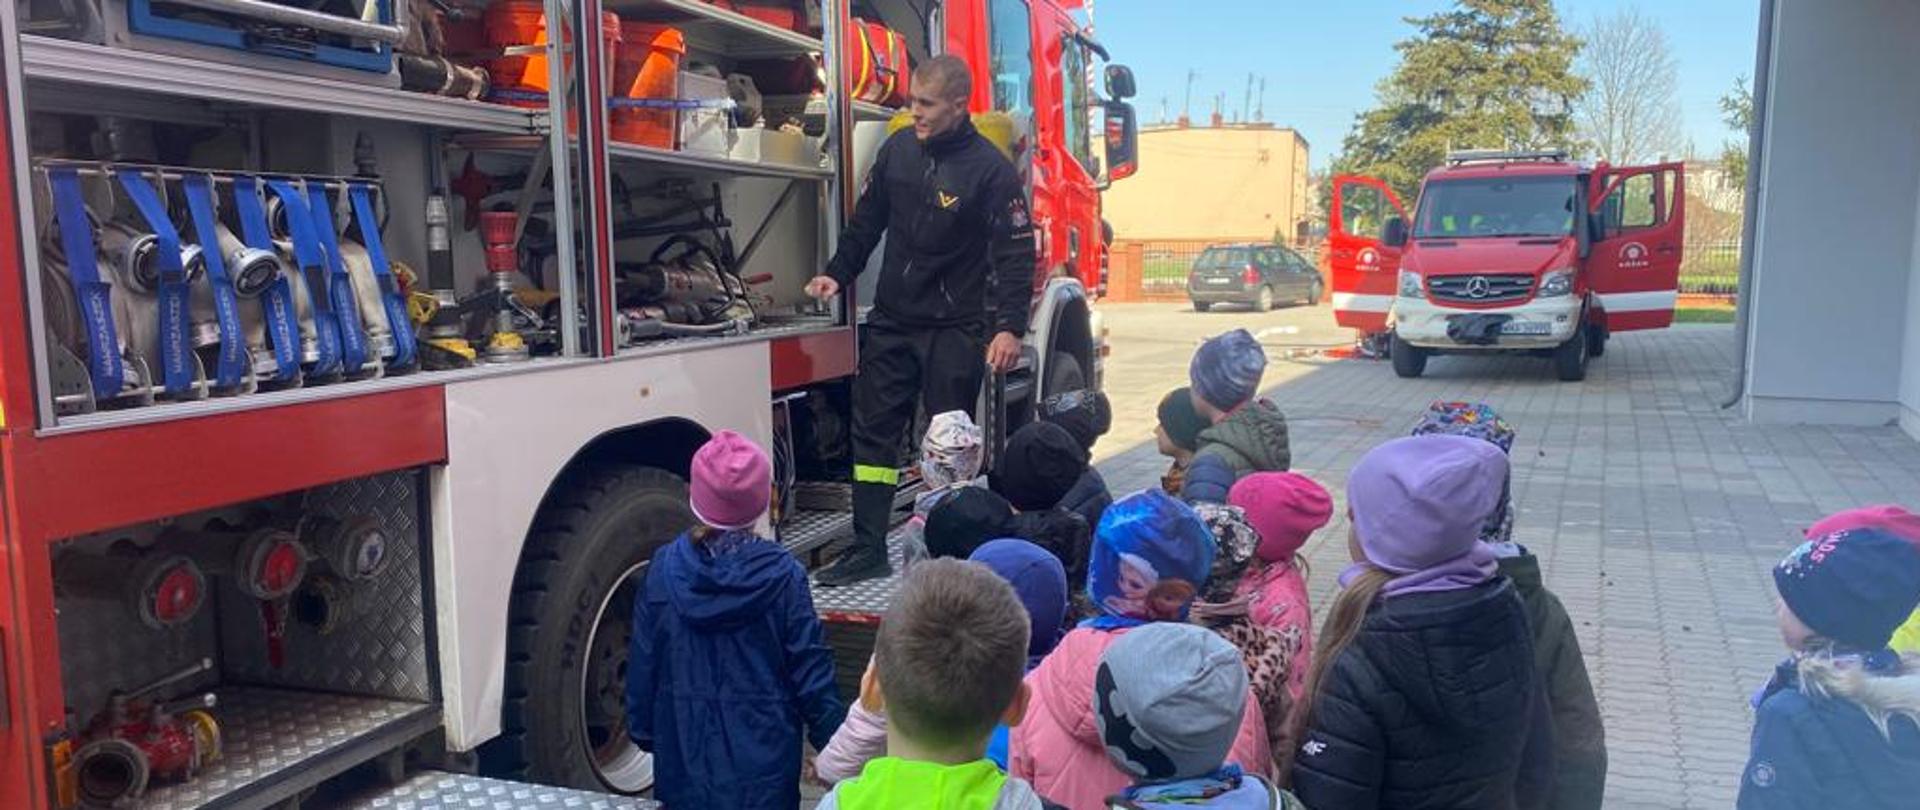 Strażak stoi przed samochodem strażackim i pokazuje sprzęt będący na wyposażeniu dzieciom stojącym przed pojazdem.